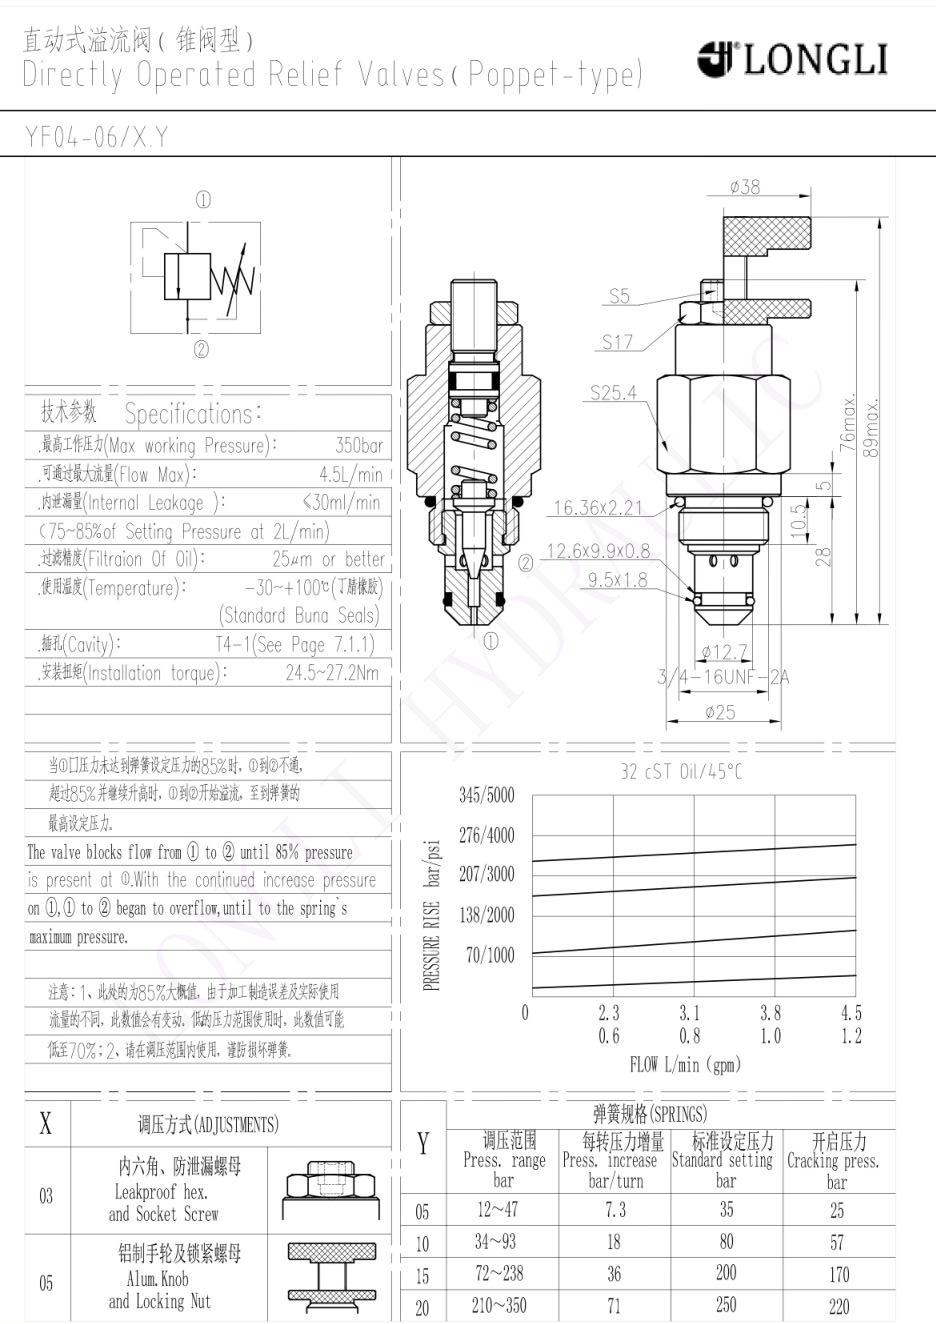 YF04-06 hydraforce type hydraulic pressure relief valve